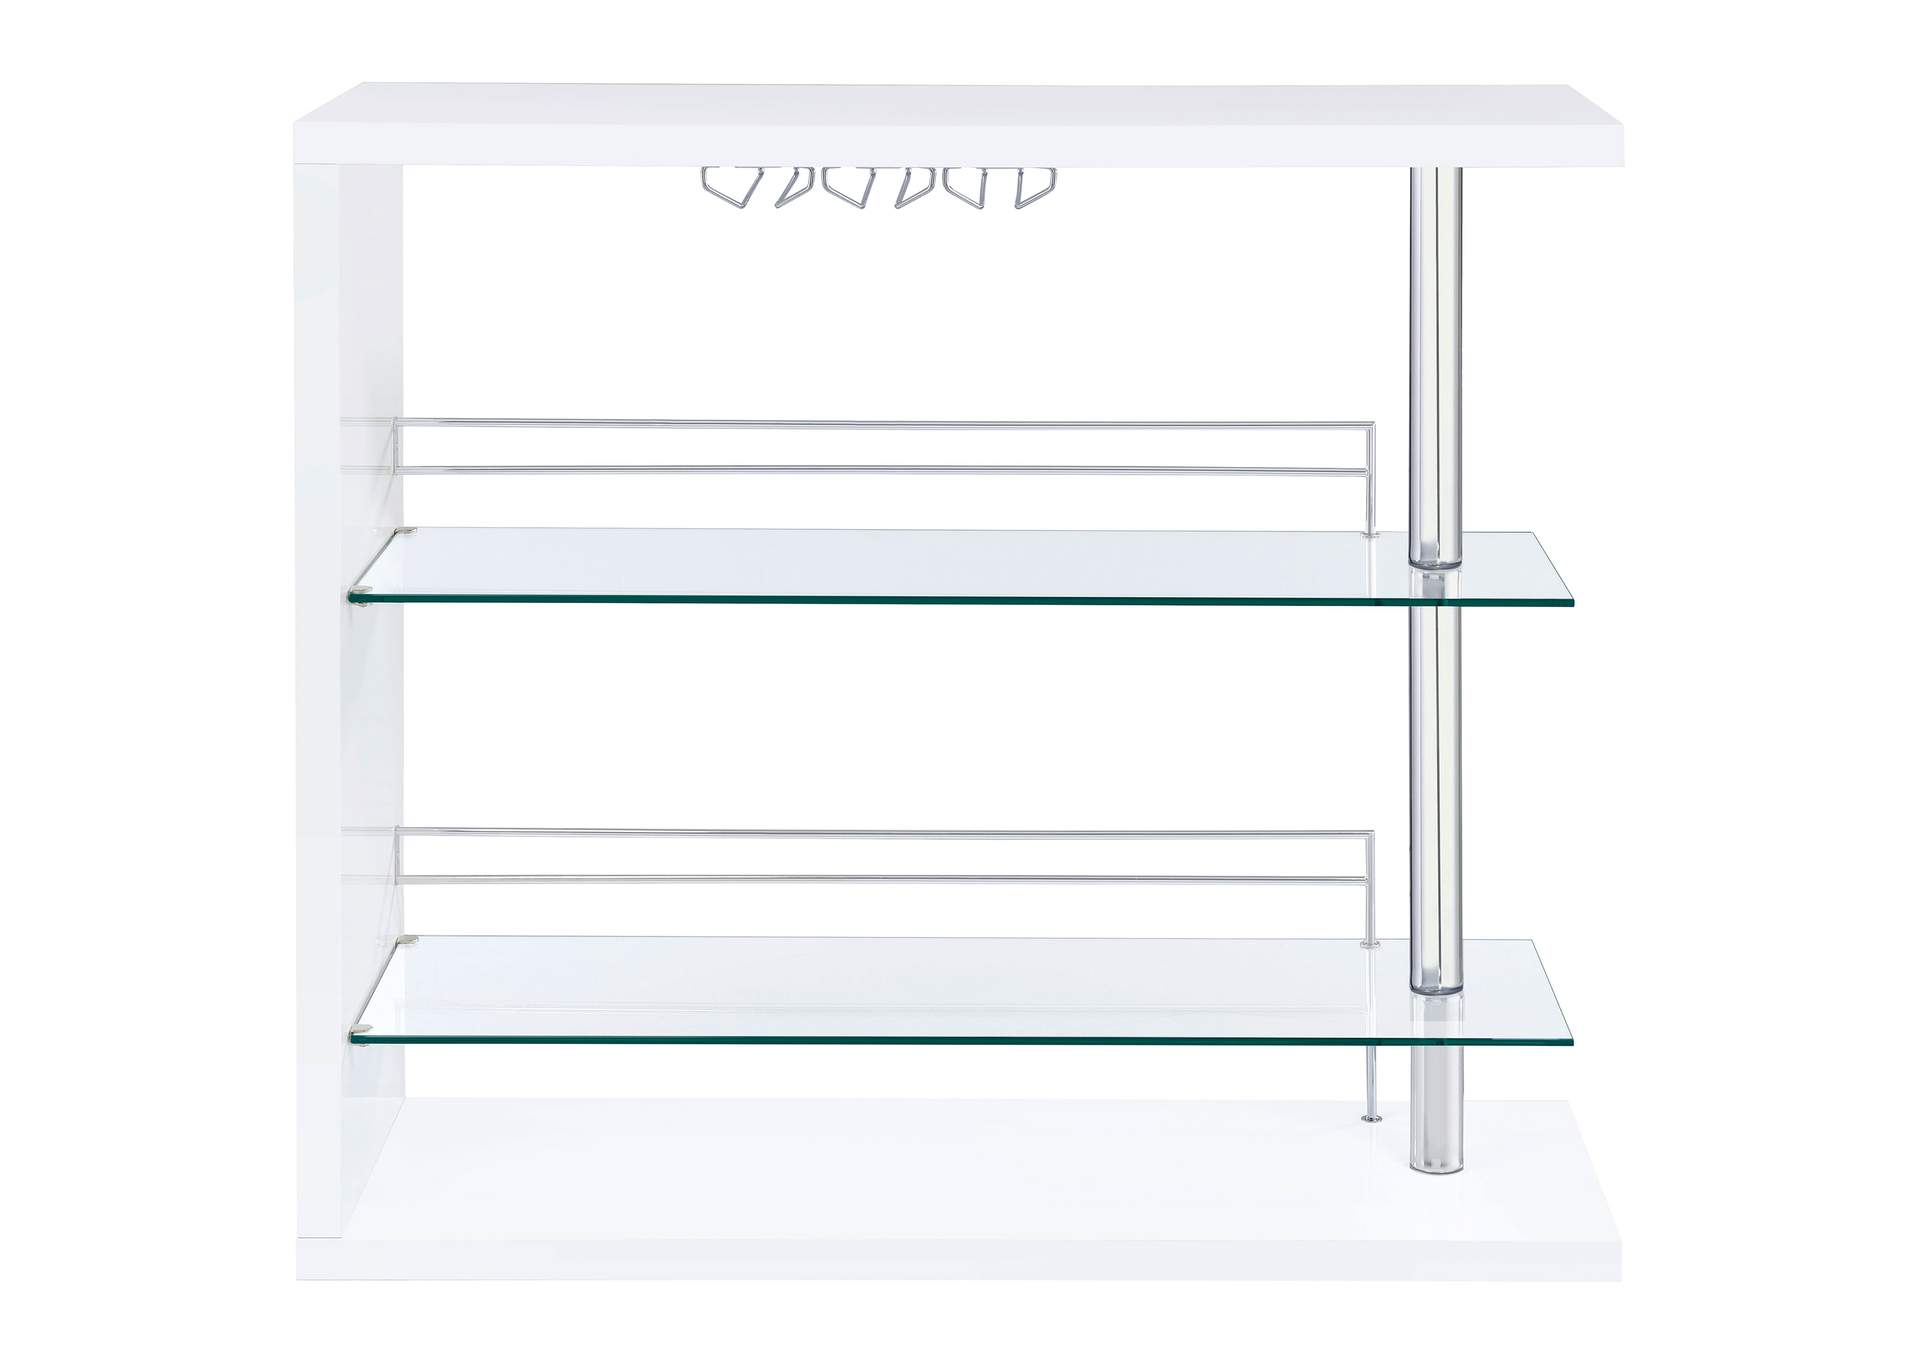 Prescott Rectangular 2-shelf Bar Unit Glossy White,Coaster Furniture